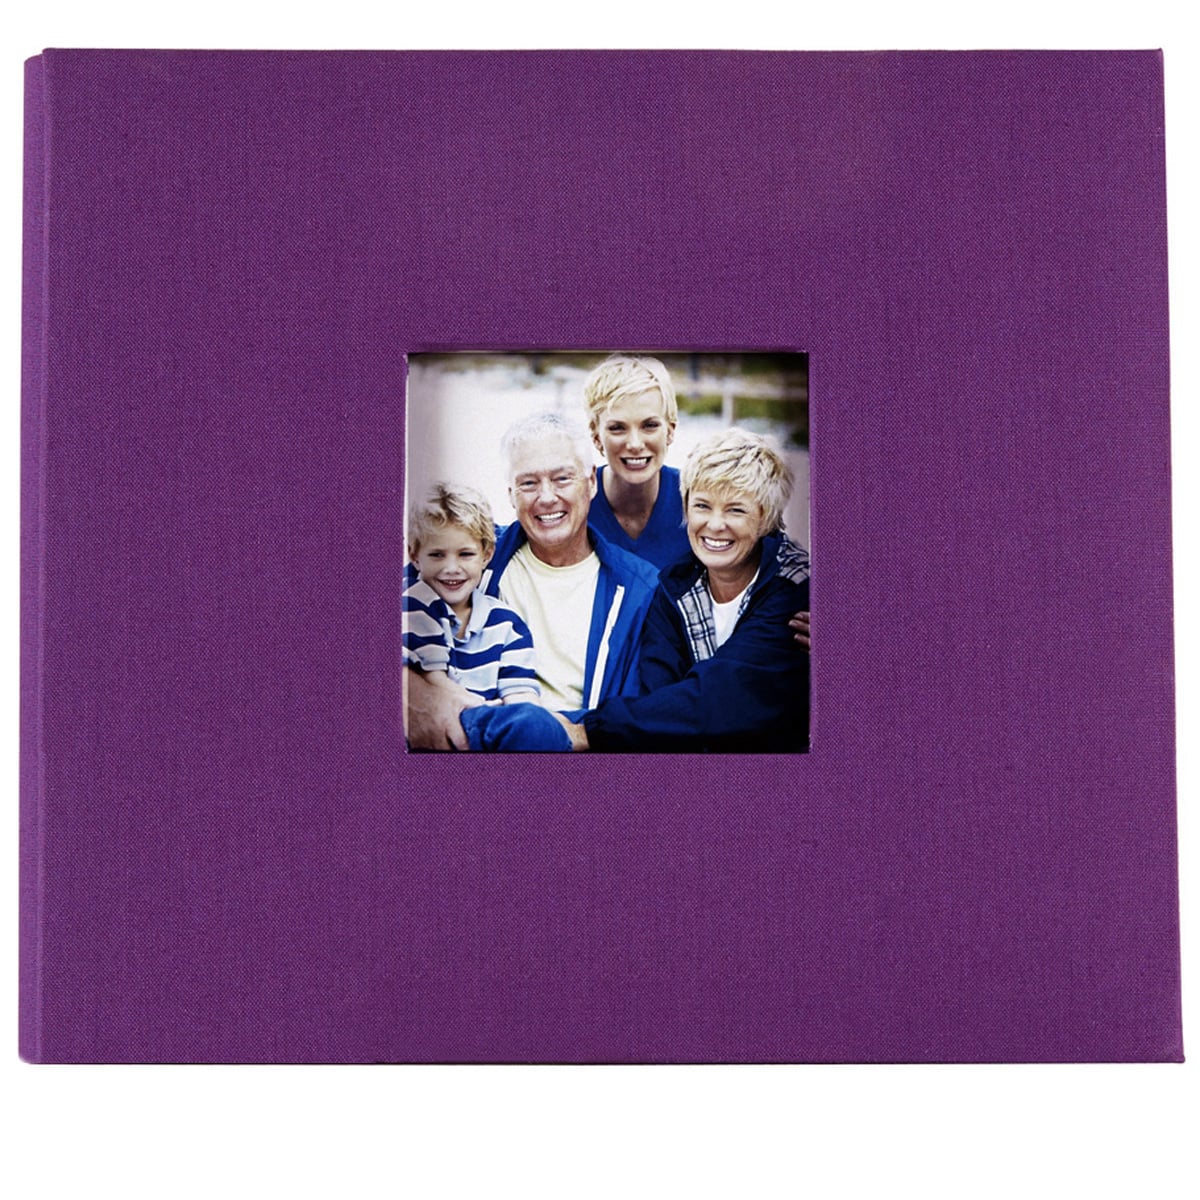 Polaroid Fabric Covered Scrapbook Album (8 x 8, Purple)